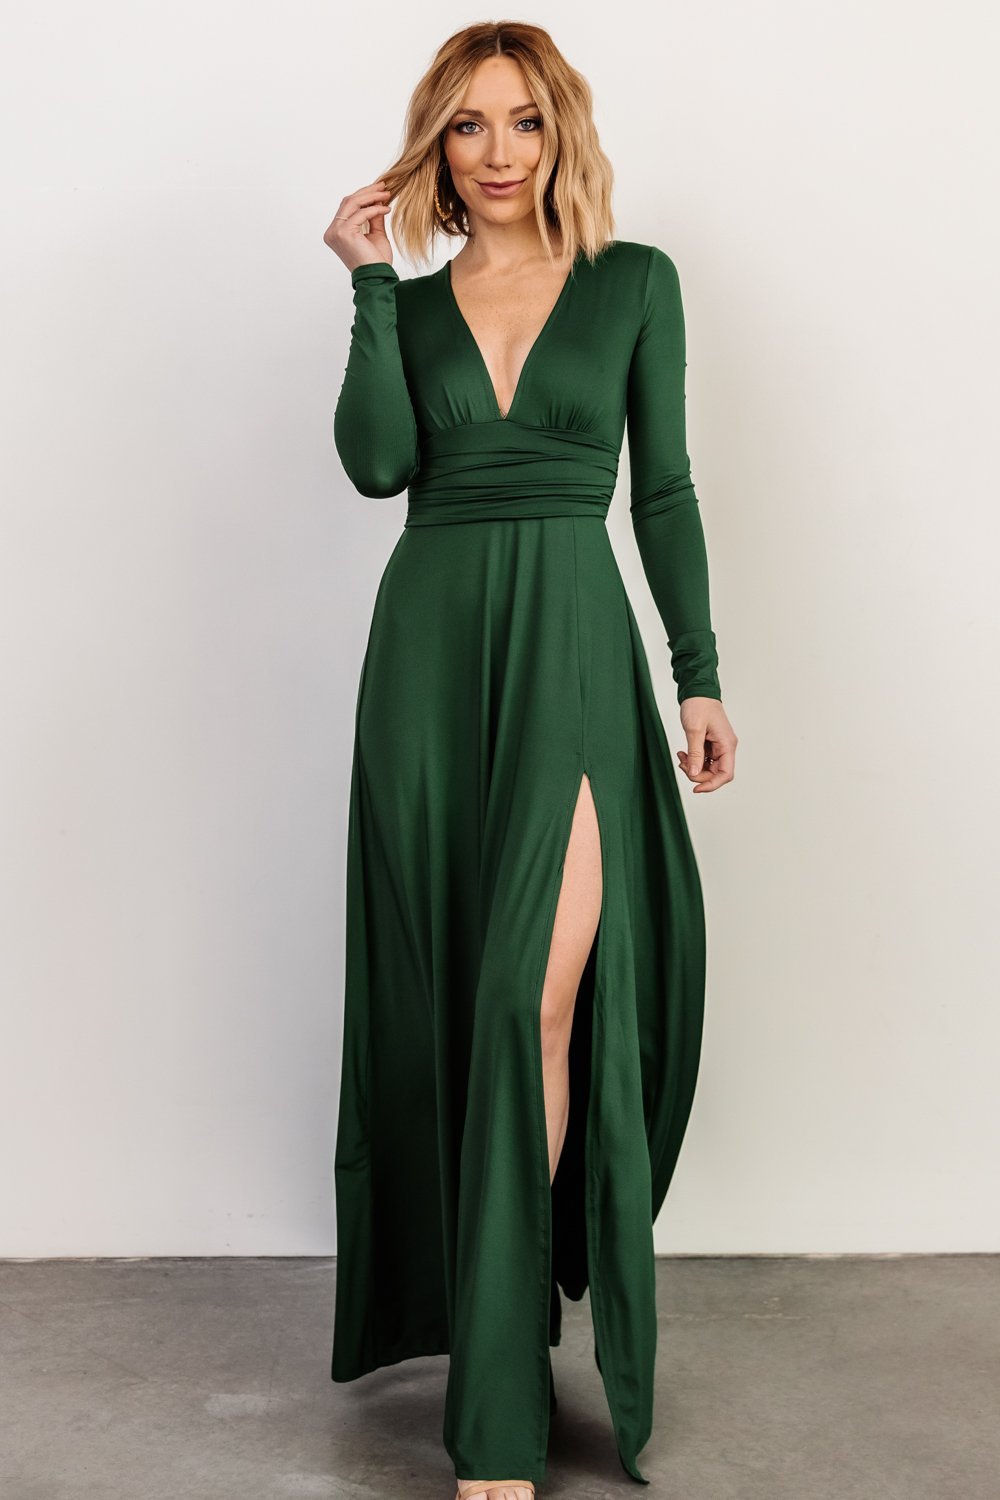 Green Maxi Dresses, Maxi Green Gowns